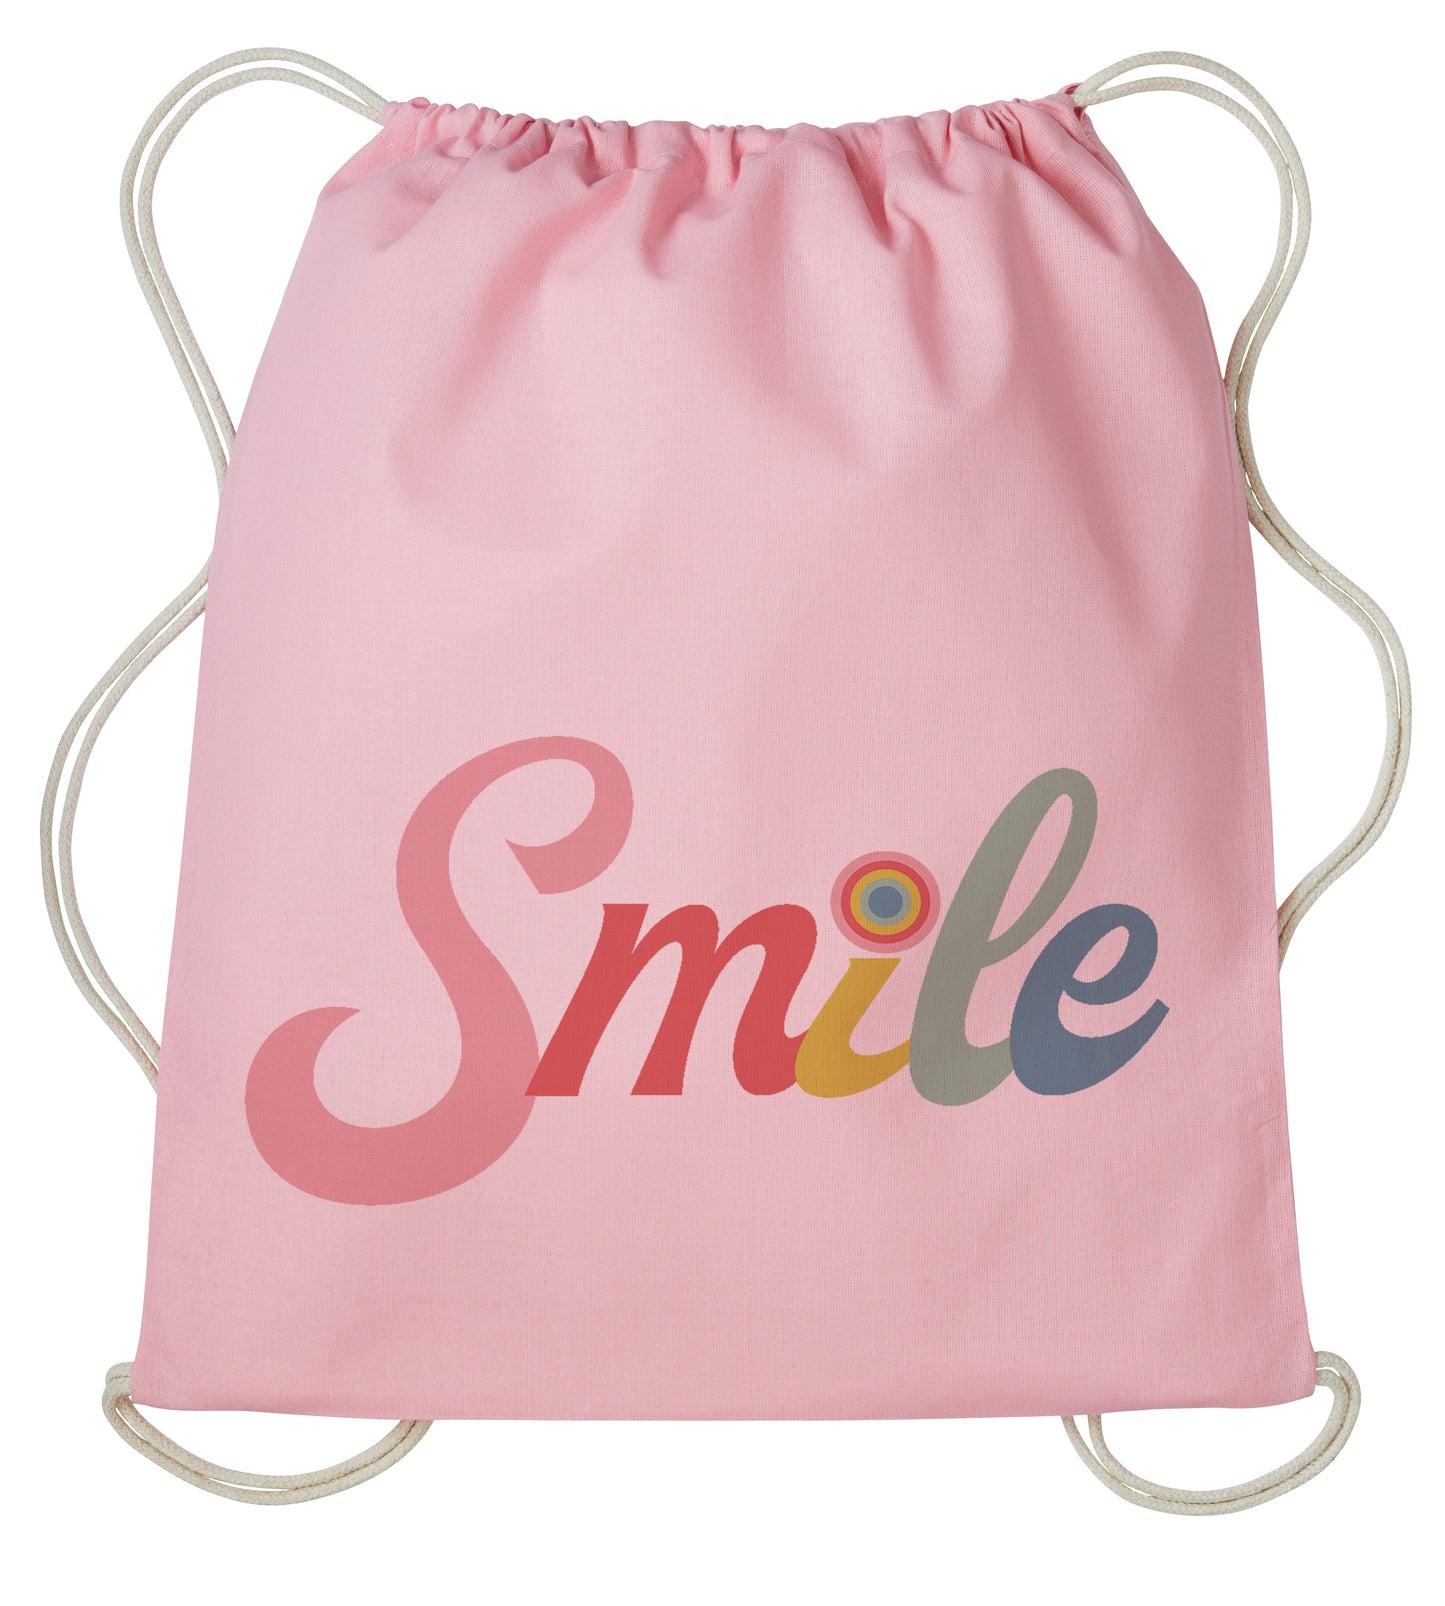 Smile Drawstring bag